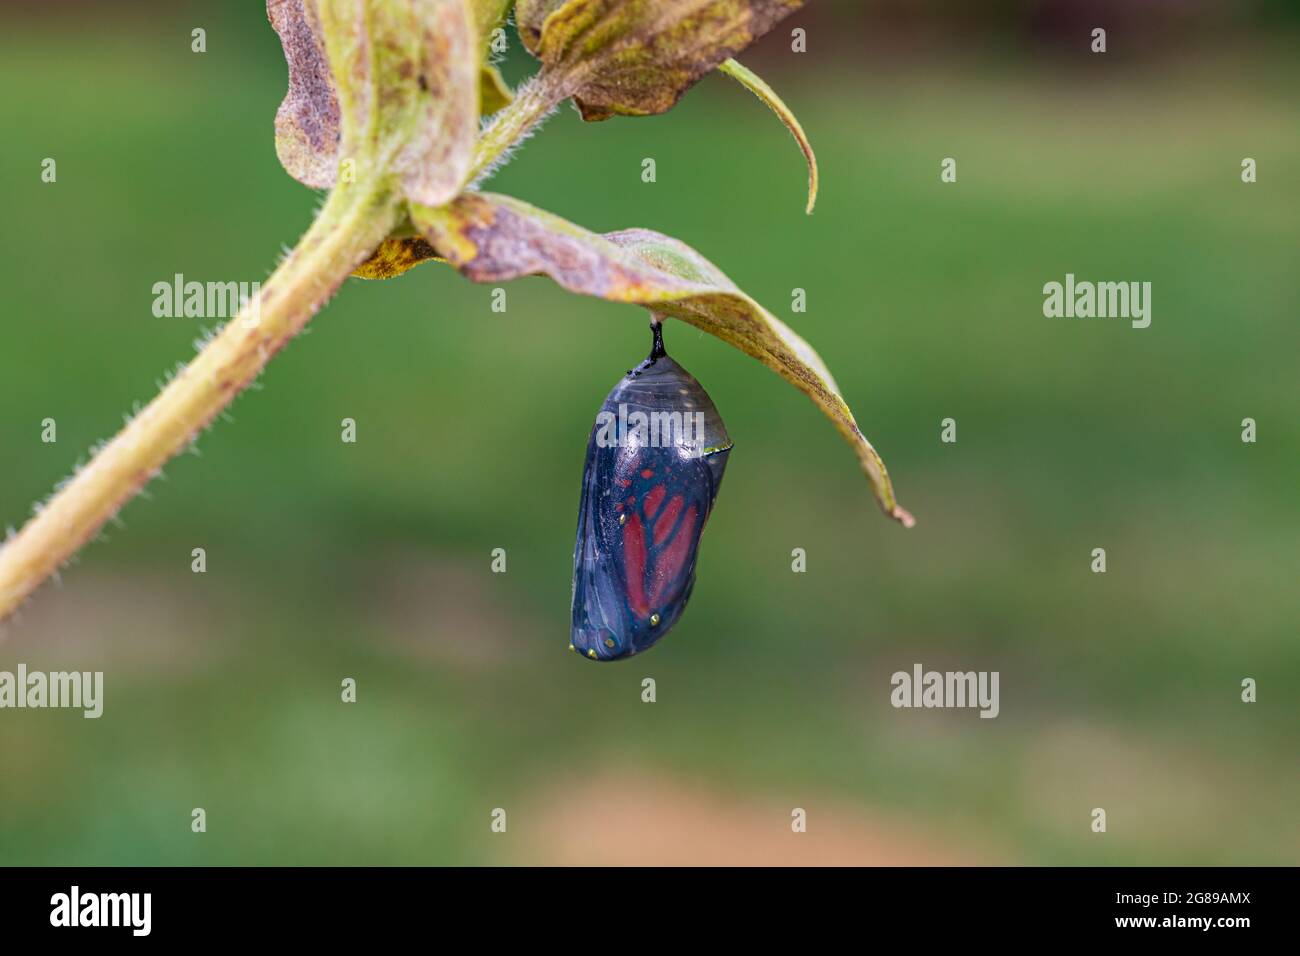 Monarque papillon chrysalide pendre de feuille de plante. Concept de la conservation des papillons, du cycle de vie, de la préservation de l'habitat et du jardin floral de l'arrière-cour Banque D'Images